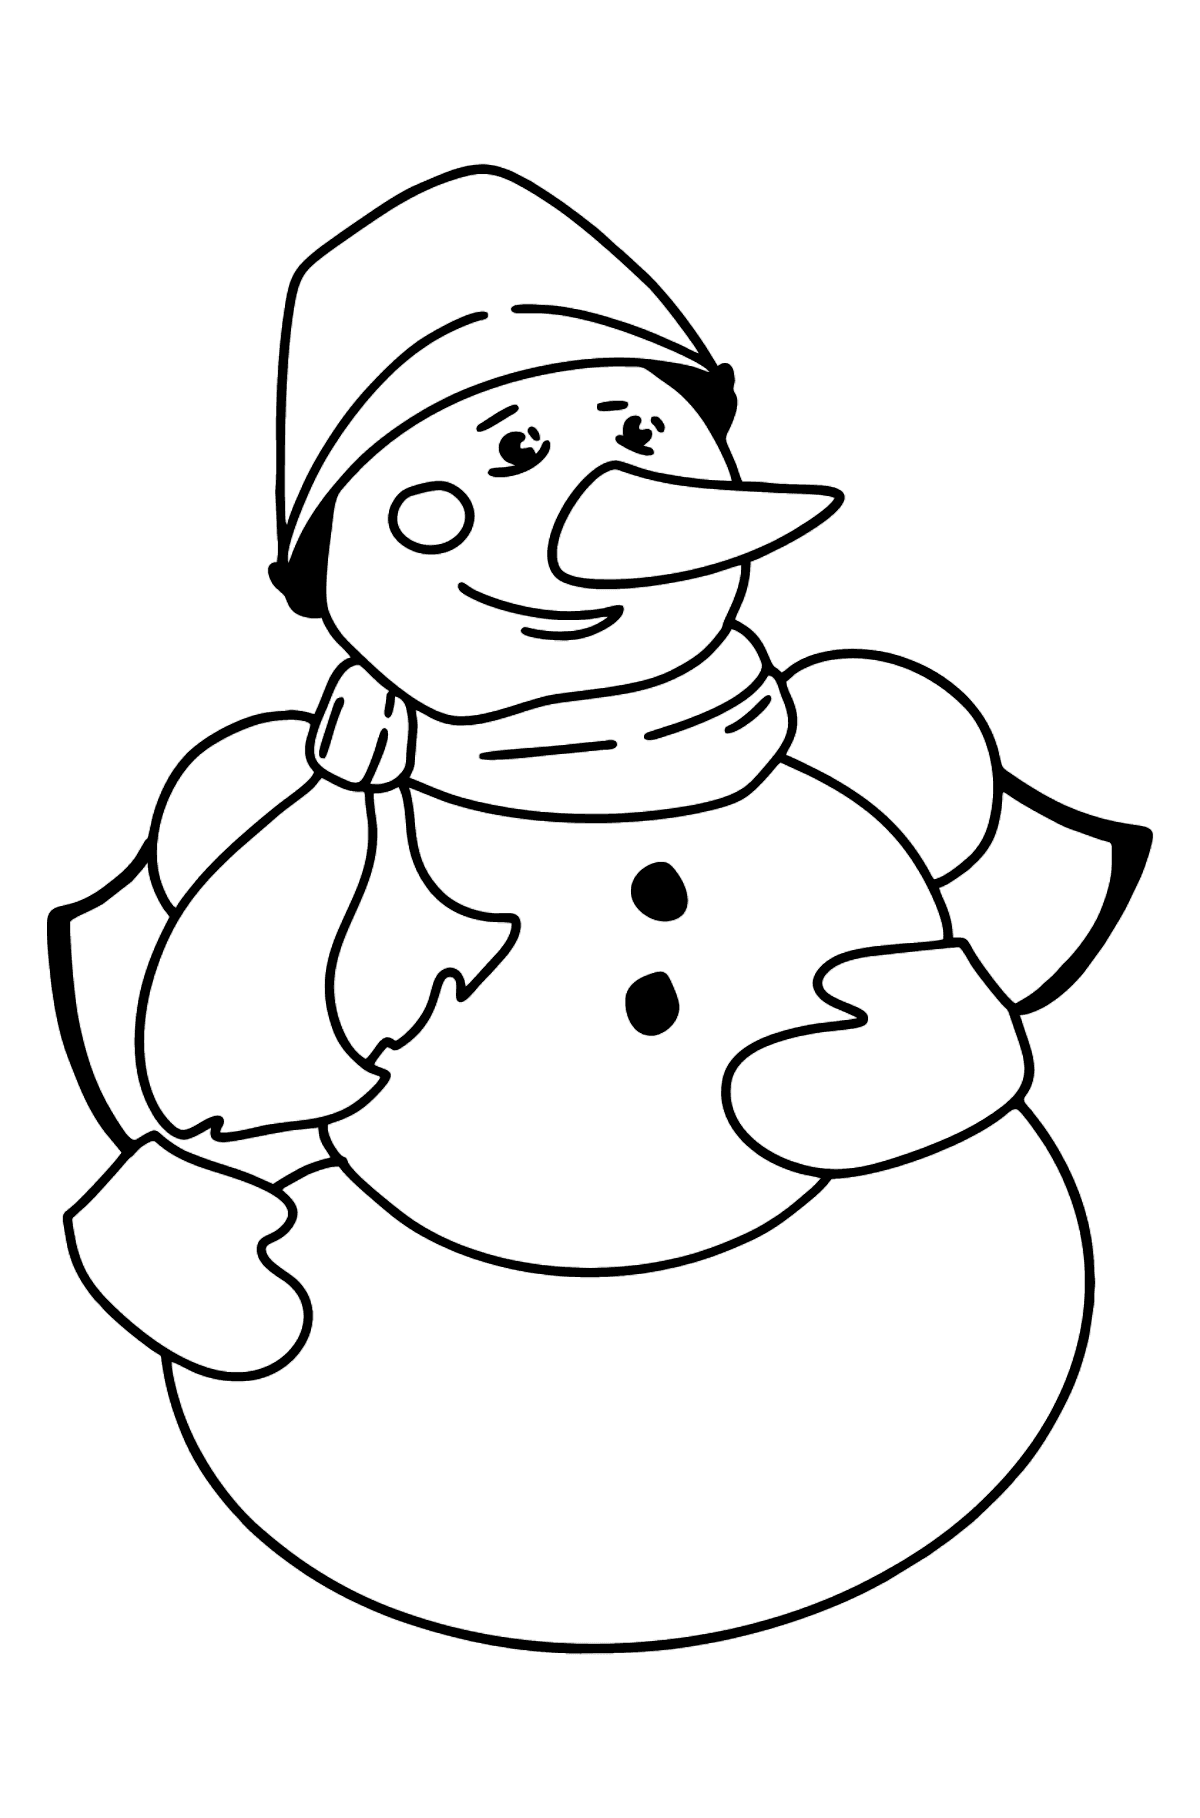 Desen de colorat om de zapada - Desene de colorat pentru copii